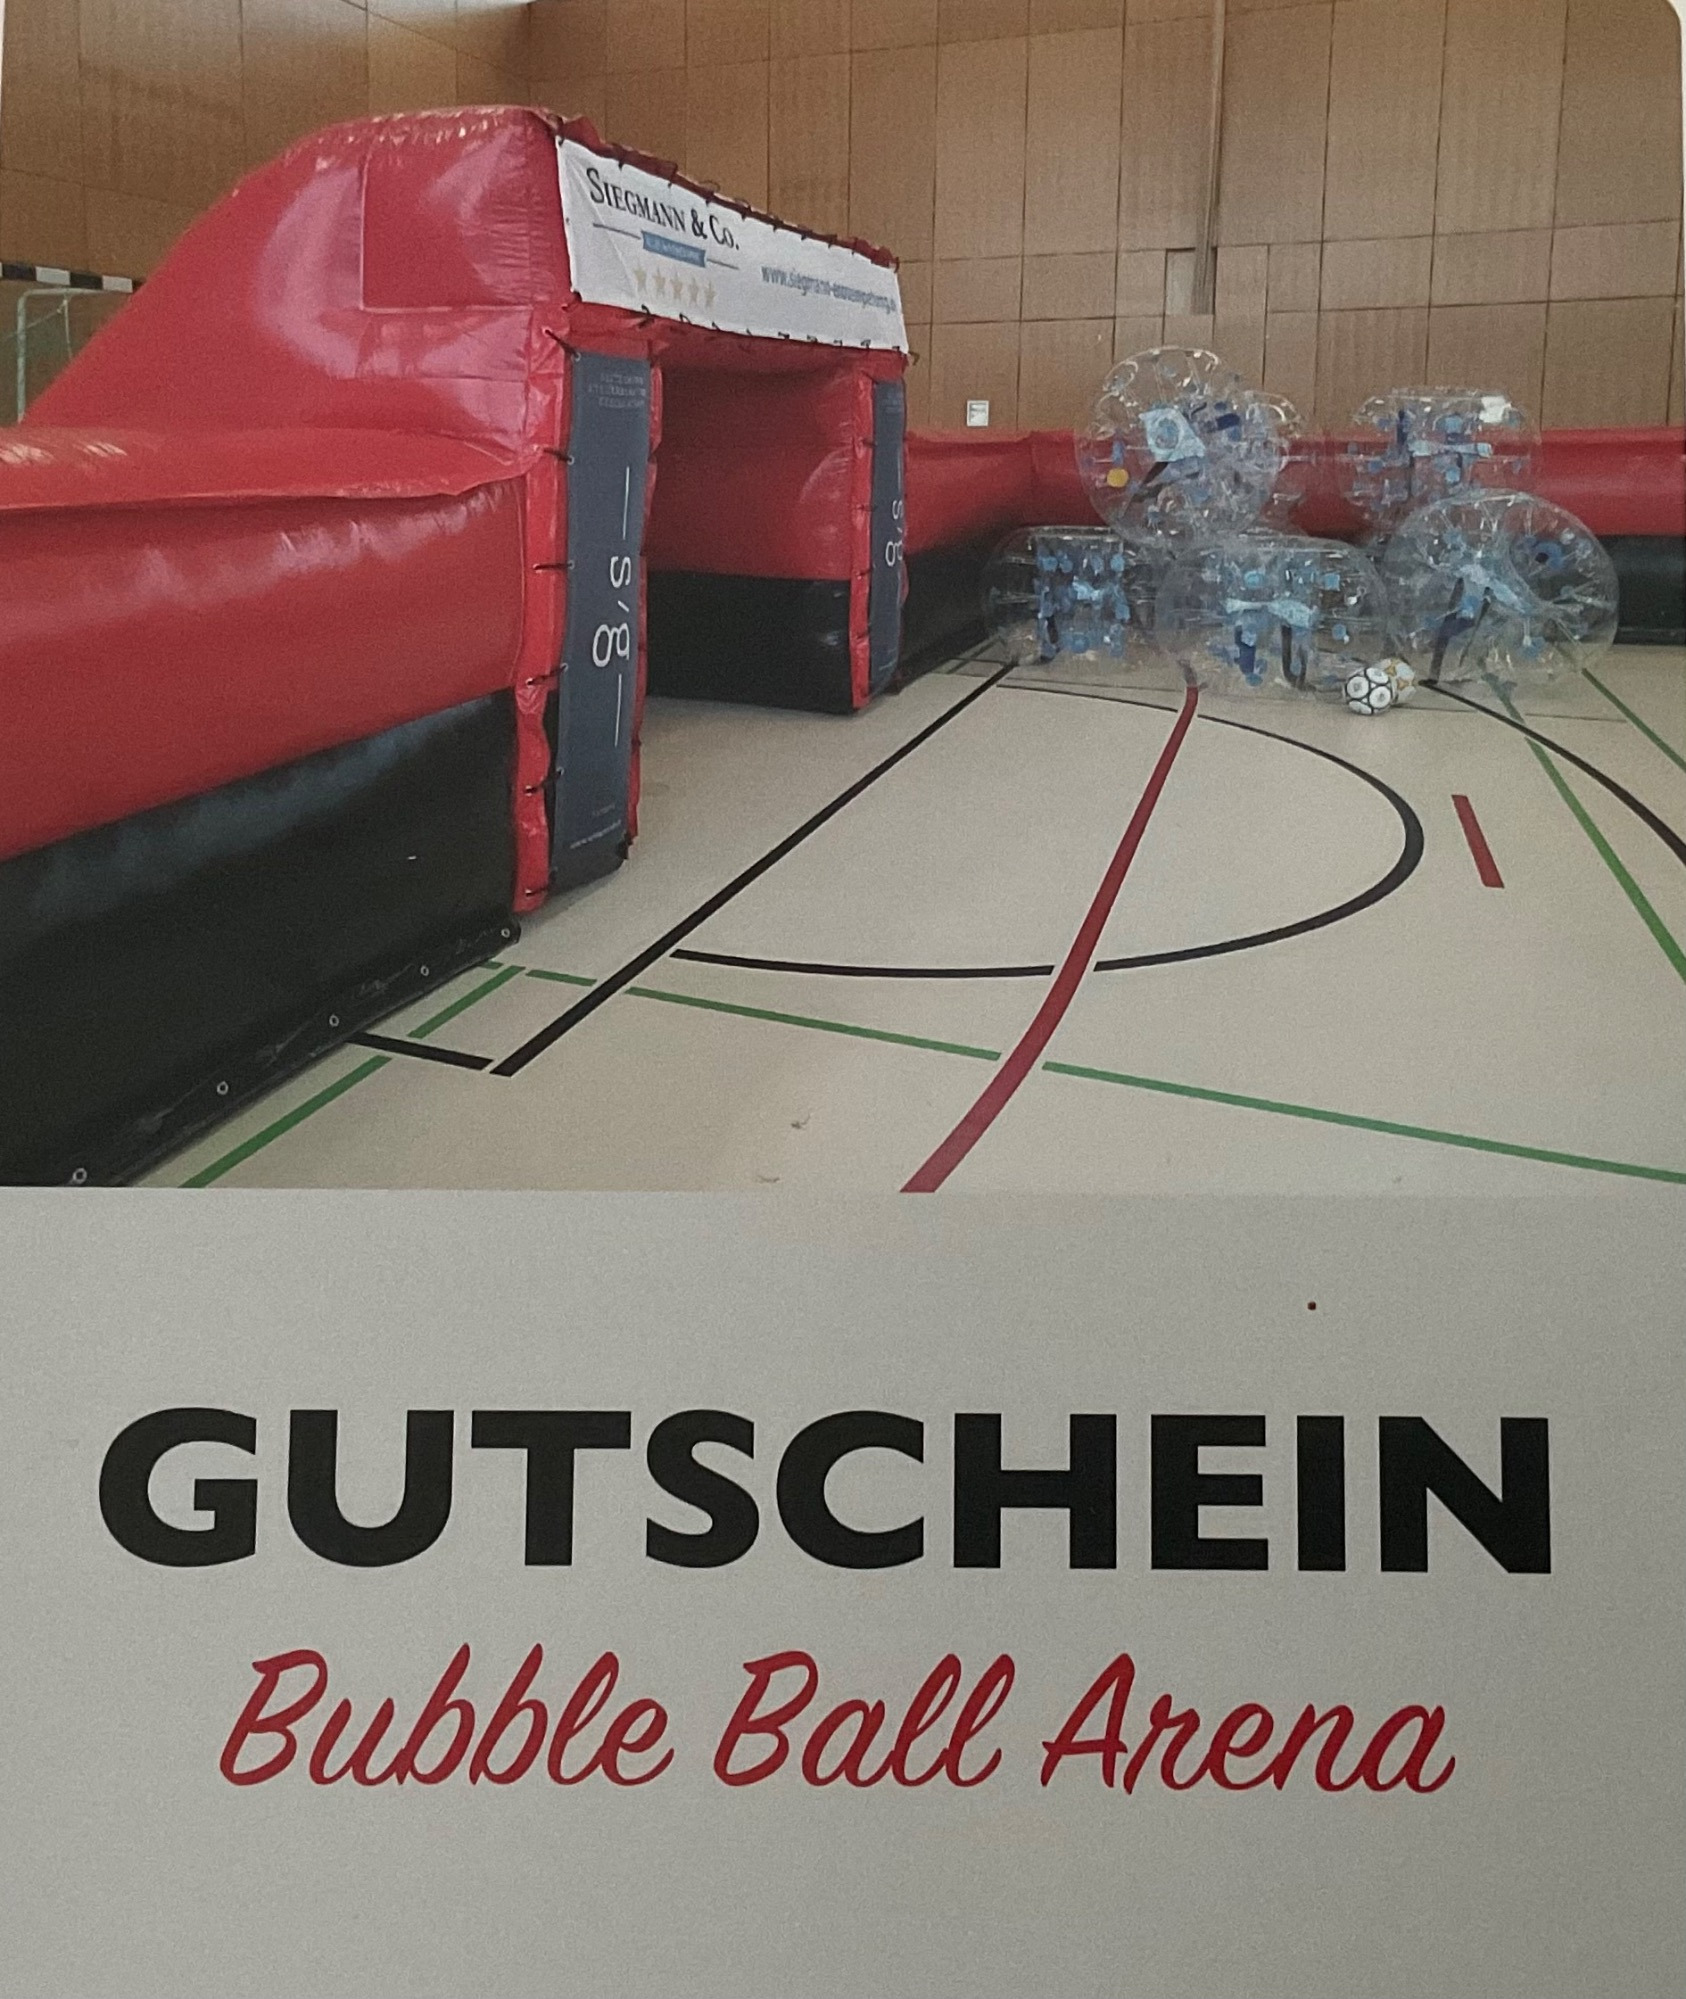 Jetzt geht die Party richtig ab! Wir haben die Bubble Ball Arena zum Schulfest gewonnen! - Bild 1